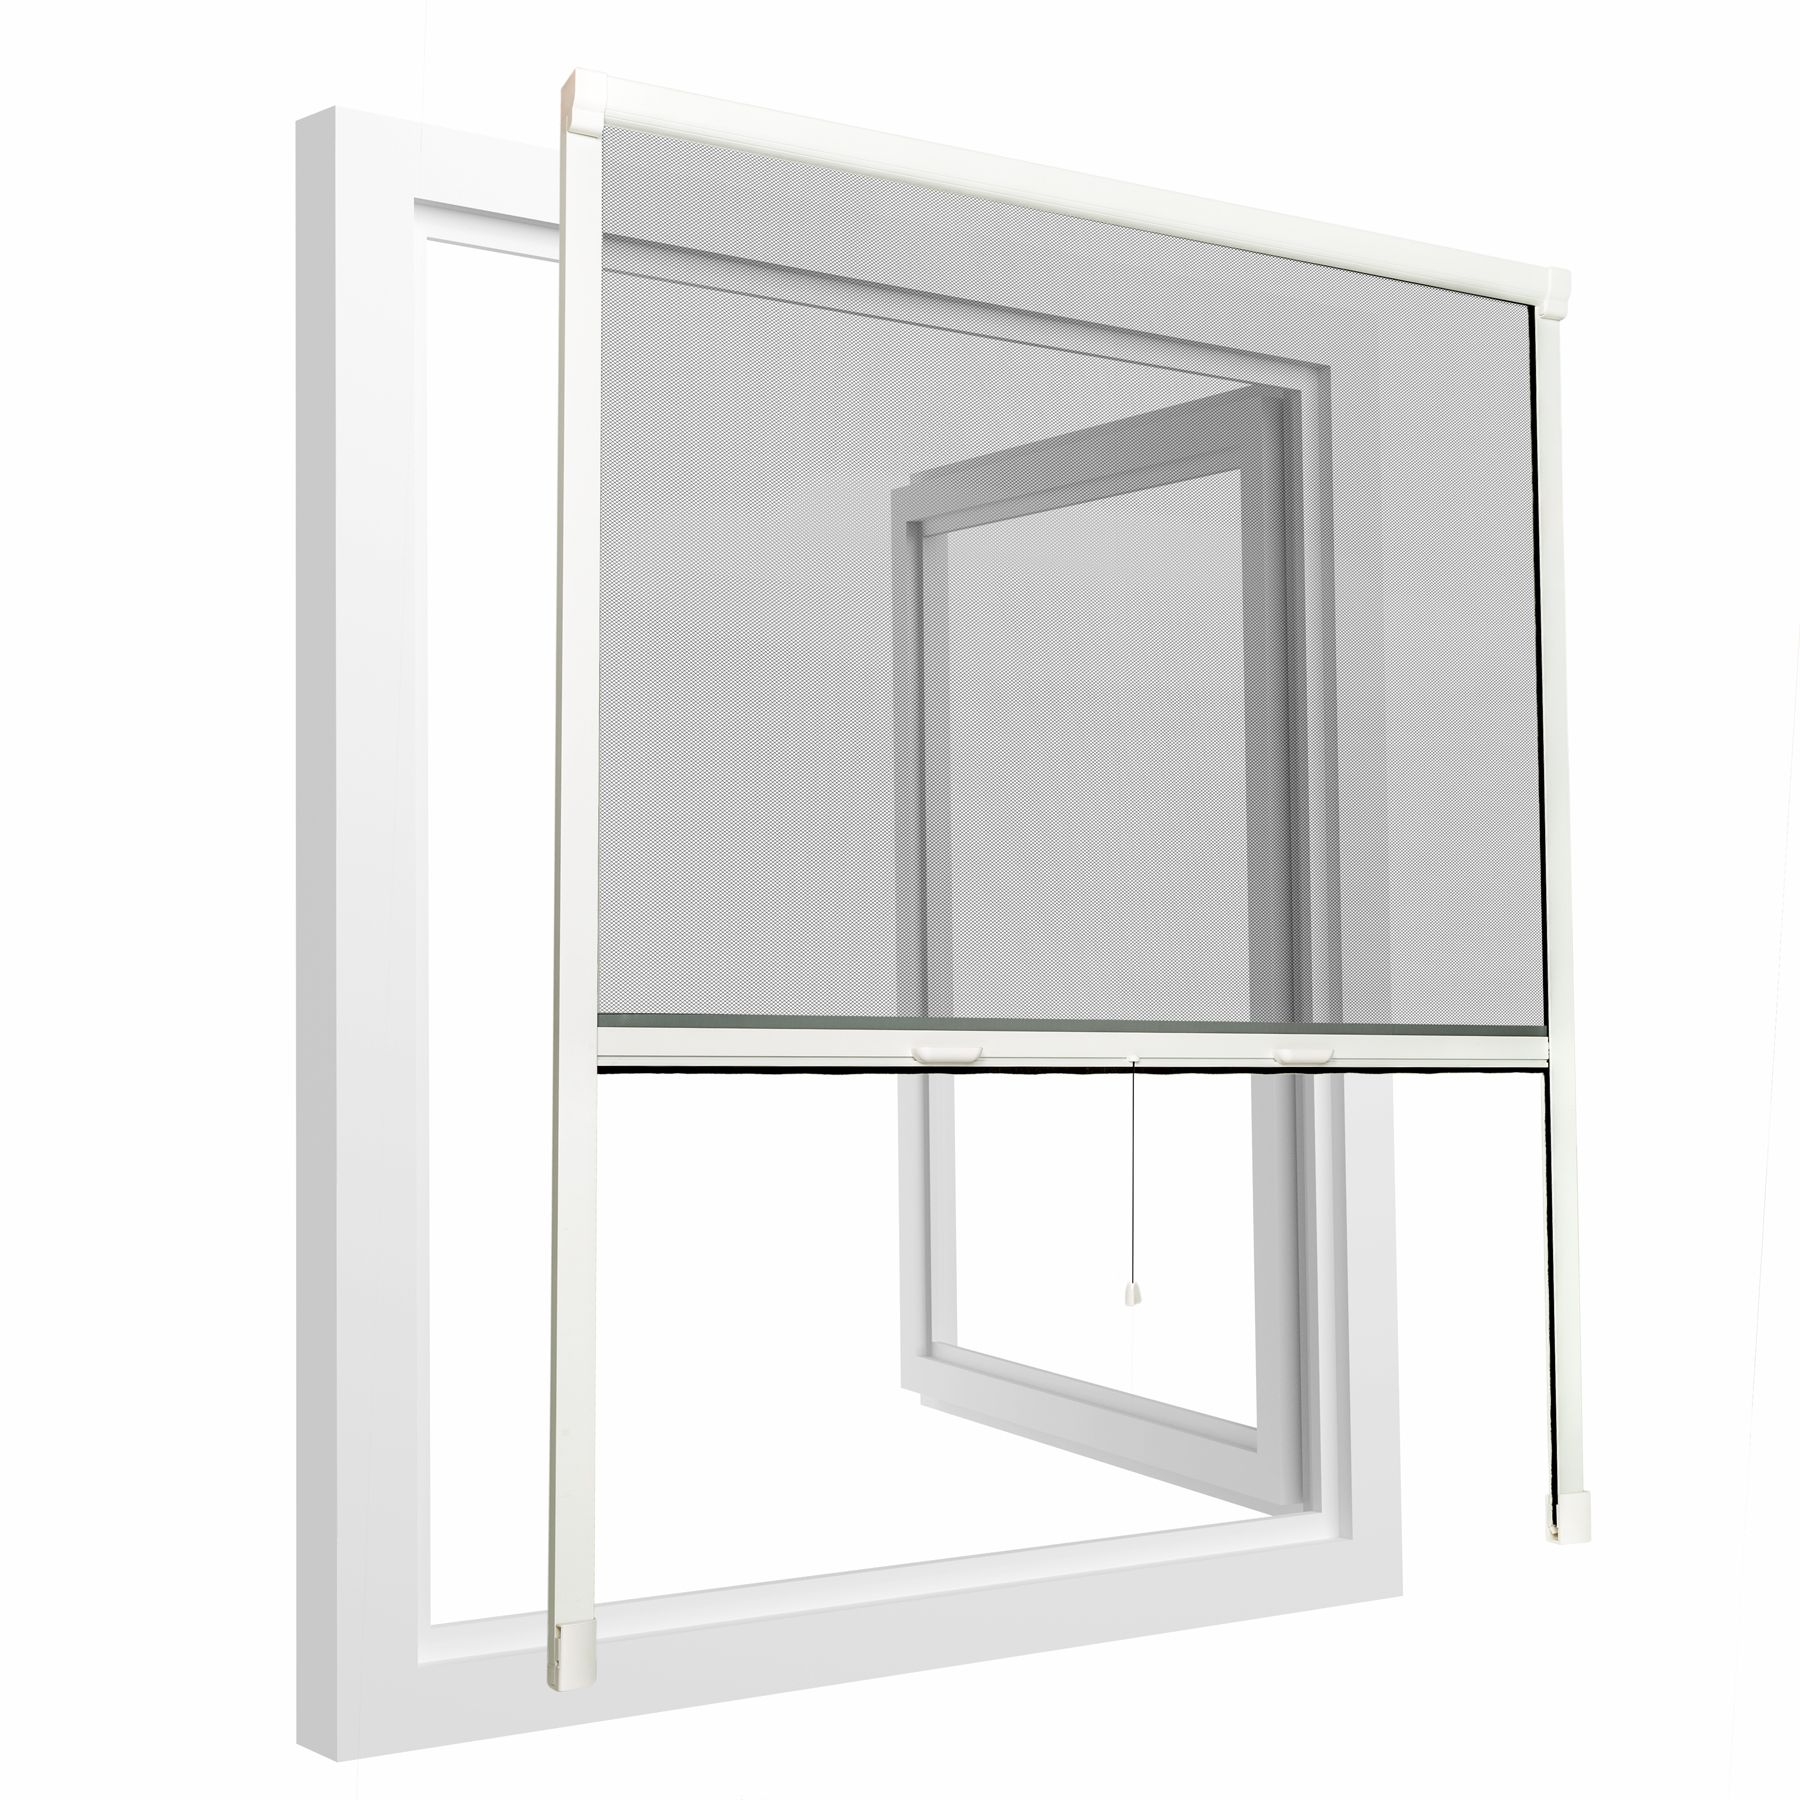 Popular Design for Hanging Screen Door - DIY Roller Insect Screen Window – Charlotte